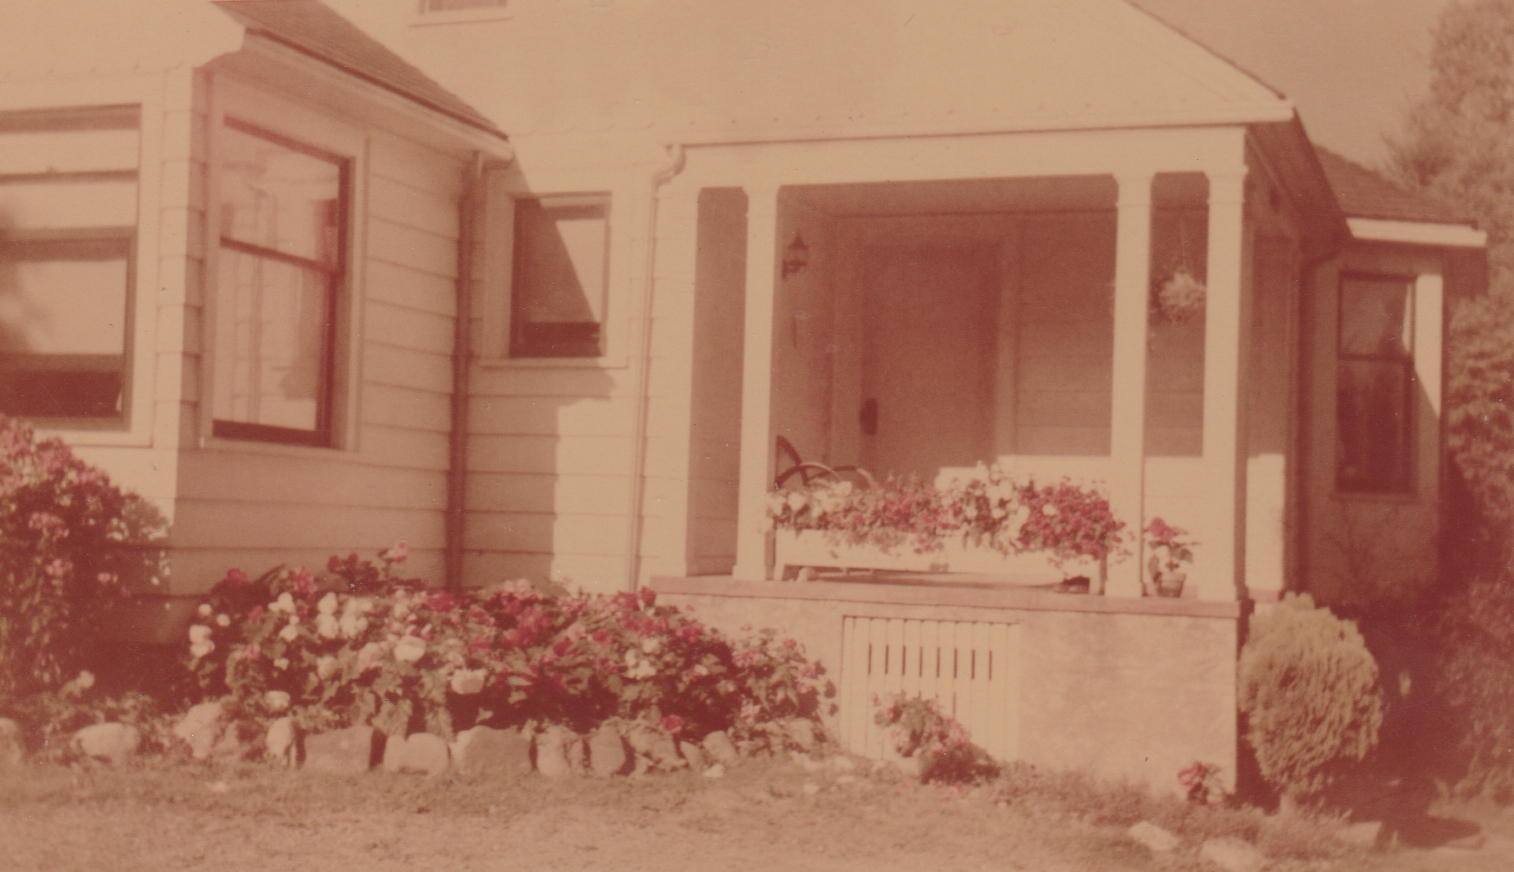 1950 - Morehead House on Mercer Island.jpg